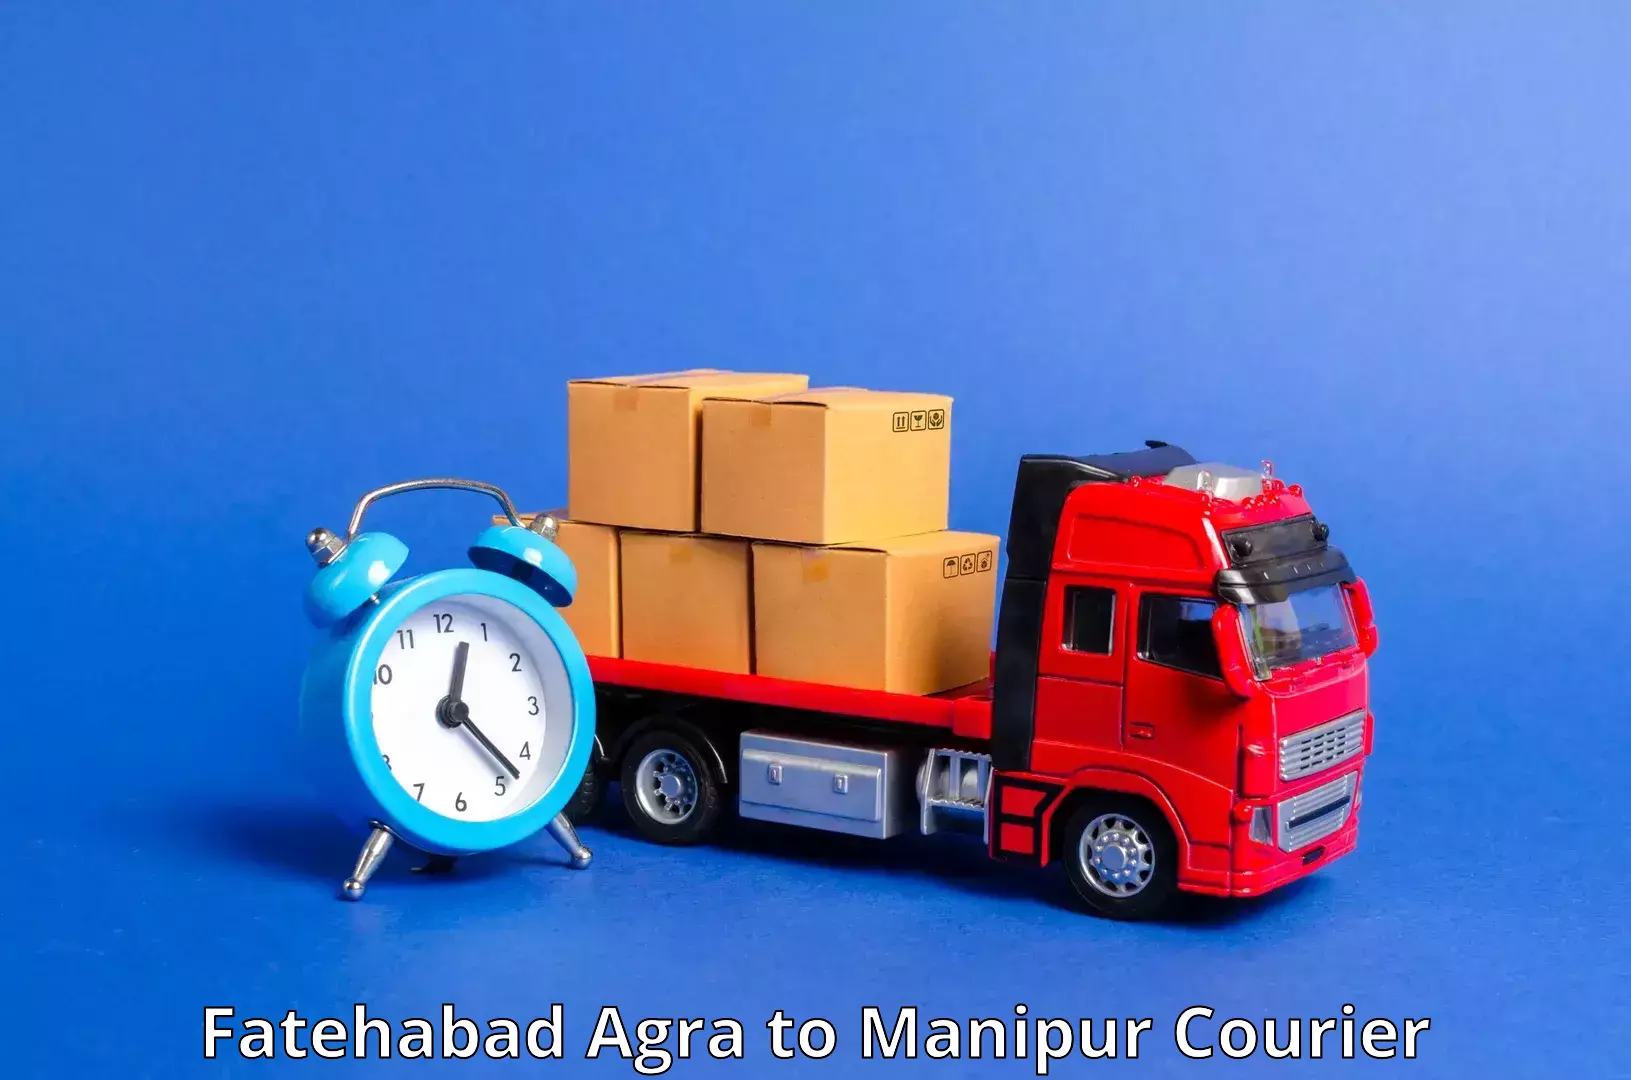 Urban courier service Fatehabad Agra to Senapati